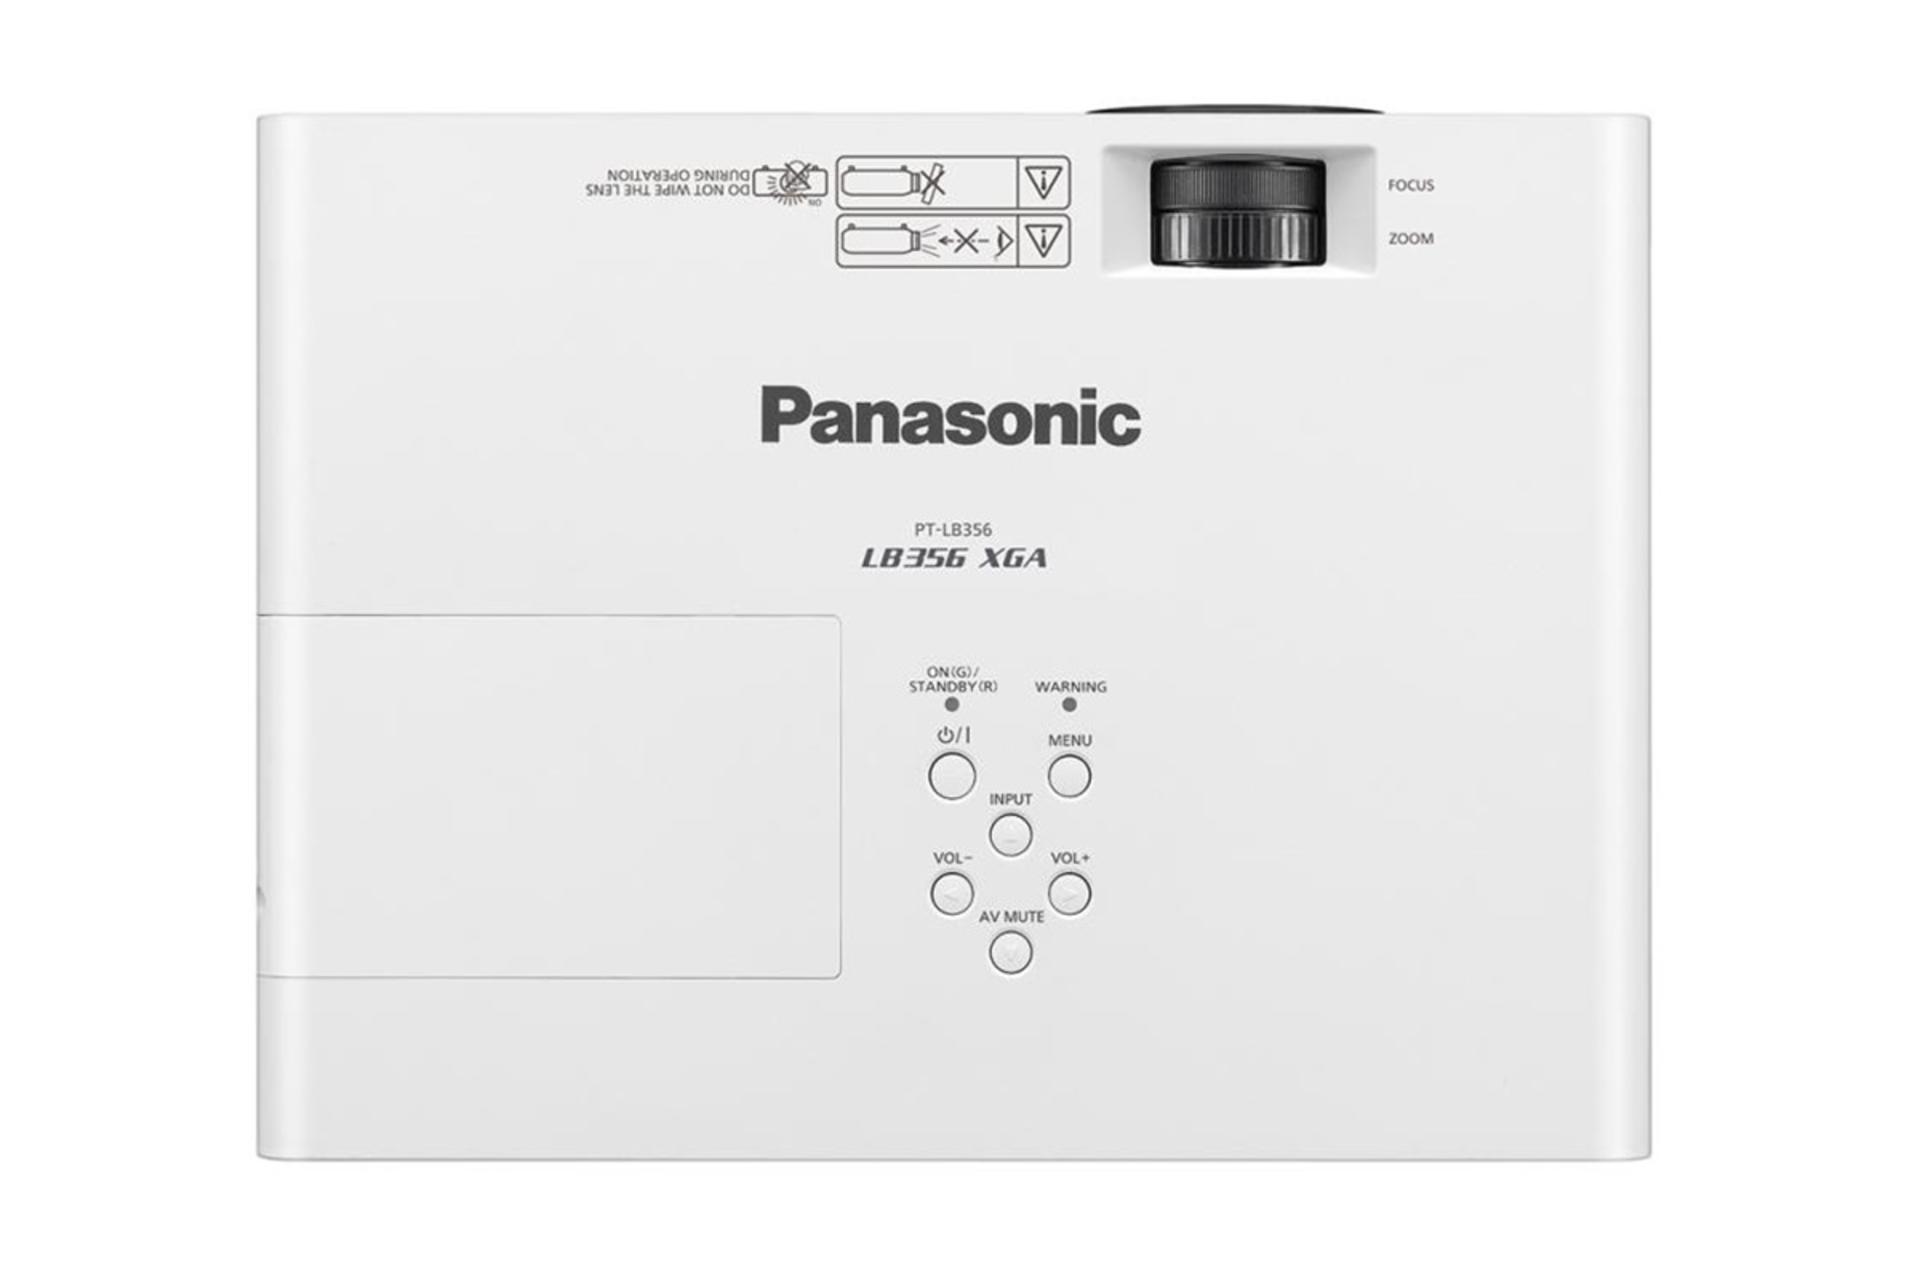 ویدیو پروژکتور پاناسونیک Panasonic PT-LB356 نمای بالا